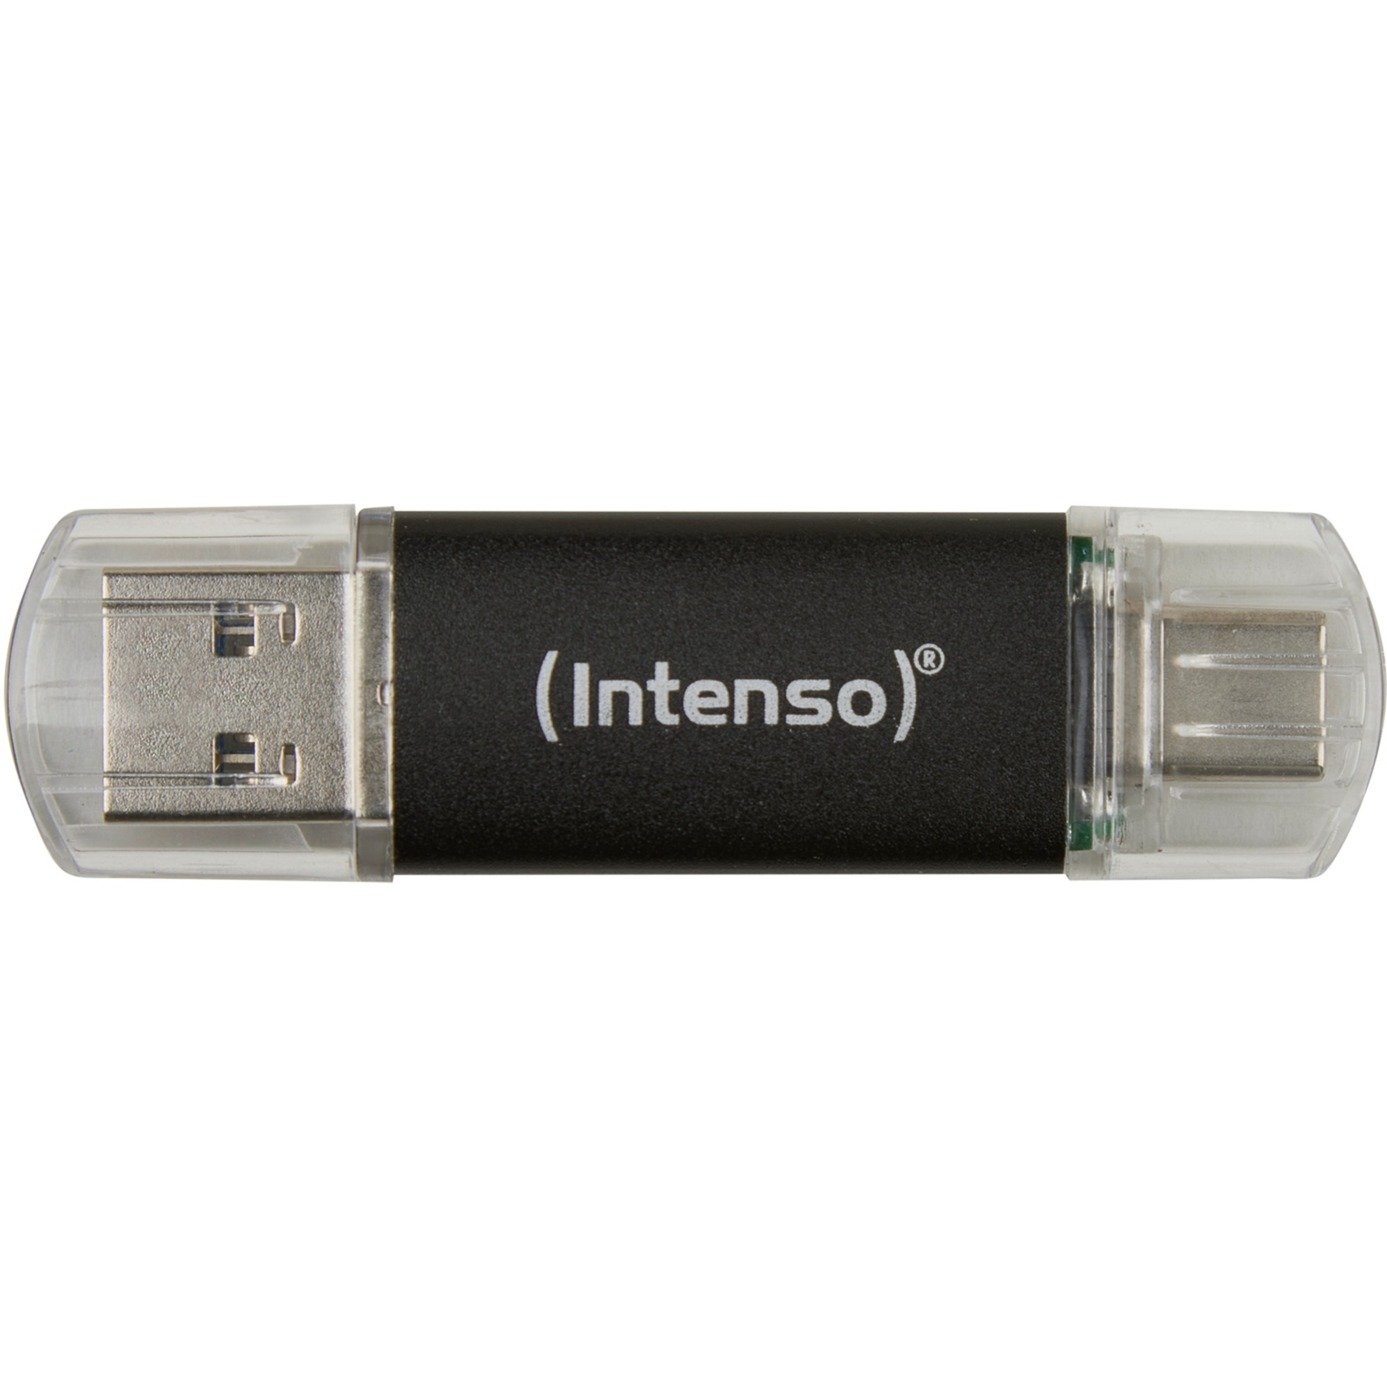 Image of Alternate - Twist Line 64 GB, USB-Stick online einkaufen bei Alternate